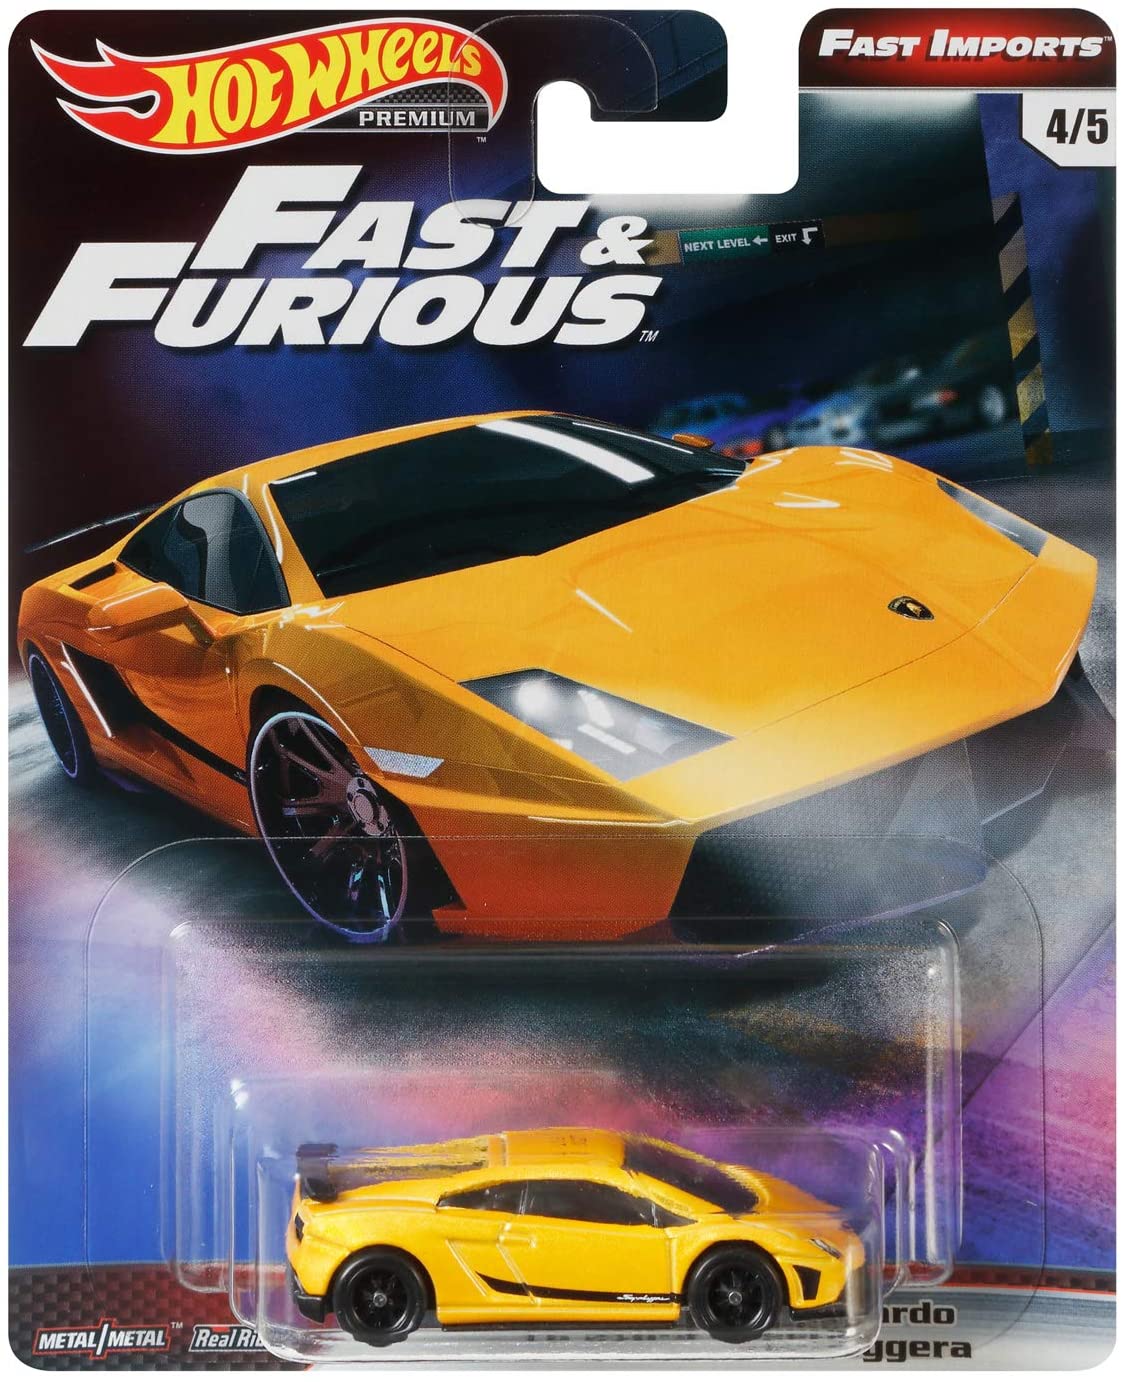 Hot Wheels Fast & Furious Fast Imports Lamborghini Gallardo LP 570-4 Superleggera Yellow 1:64